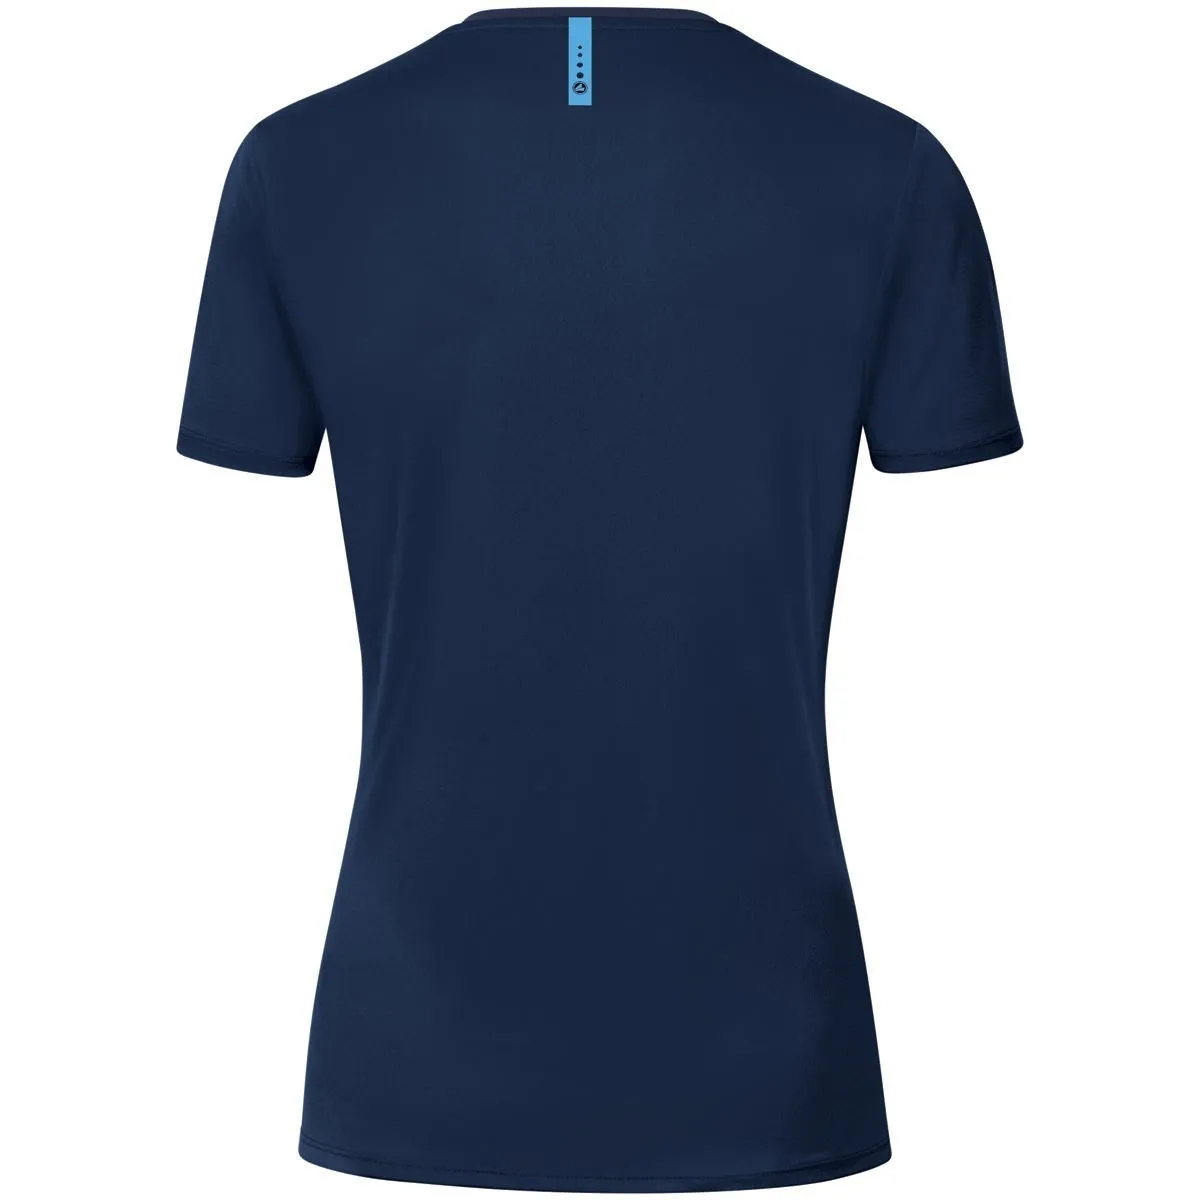 Jako T-Shirt Champ 2.0 dunkel blau für Damen, Herren und Kinder